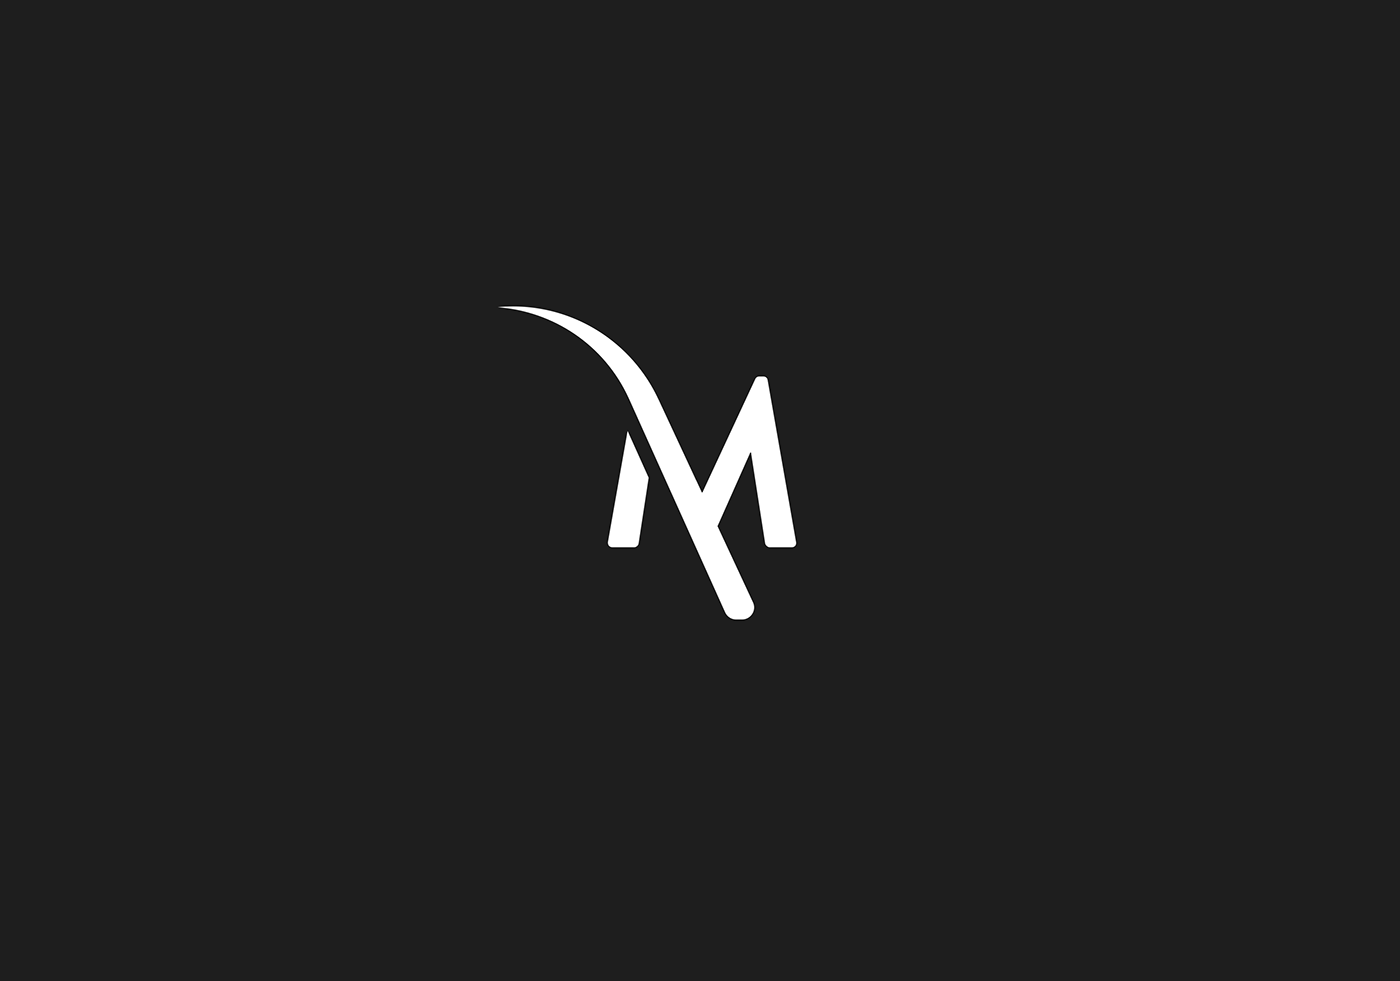 THE M logo design on Behance.